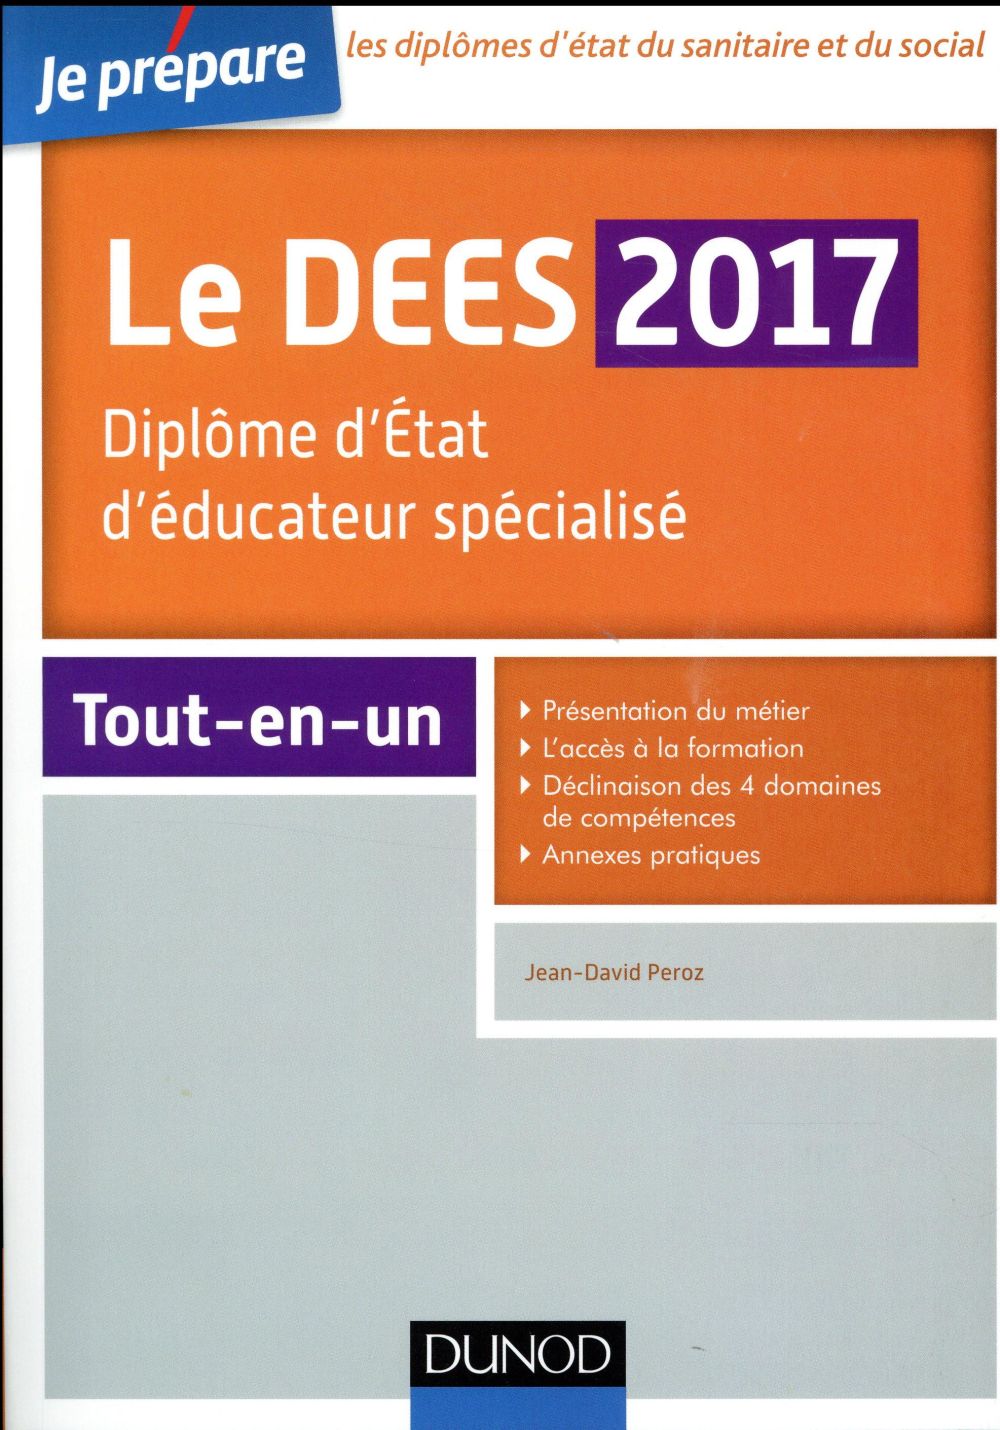 JE PREPARE LE DEES 2017 - DIPLOME D'ETAT D'EDUCATEUR SPECIALISE - TOUT-EN-UN